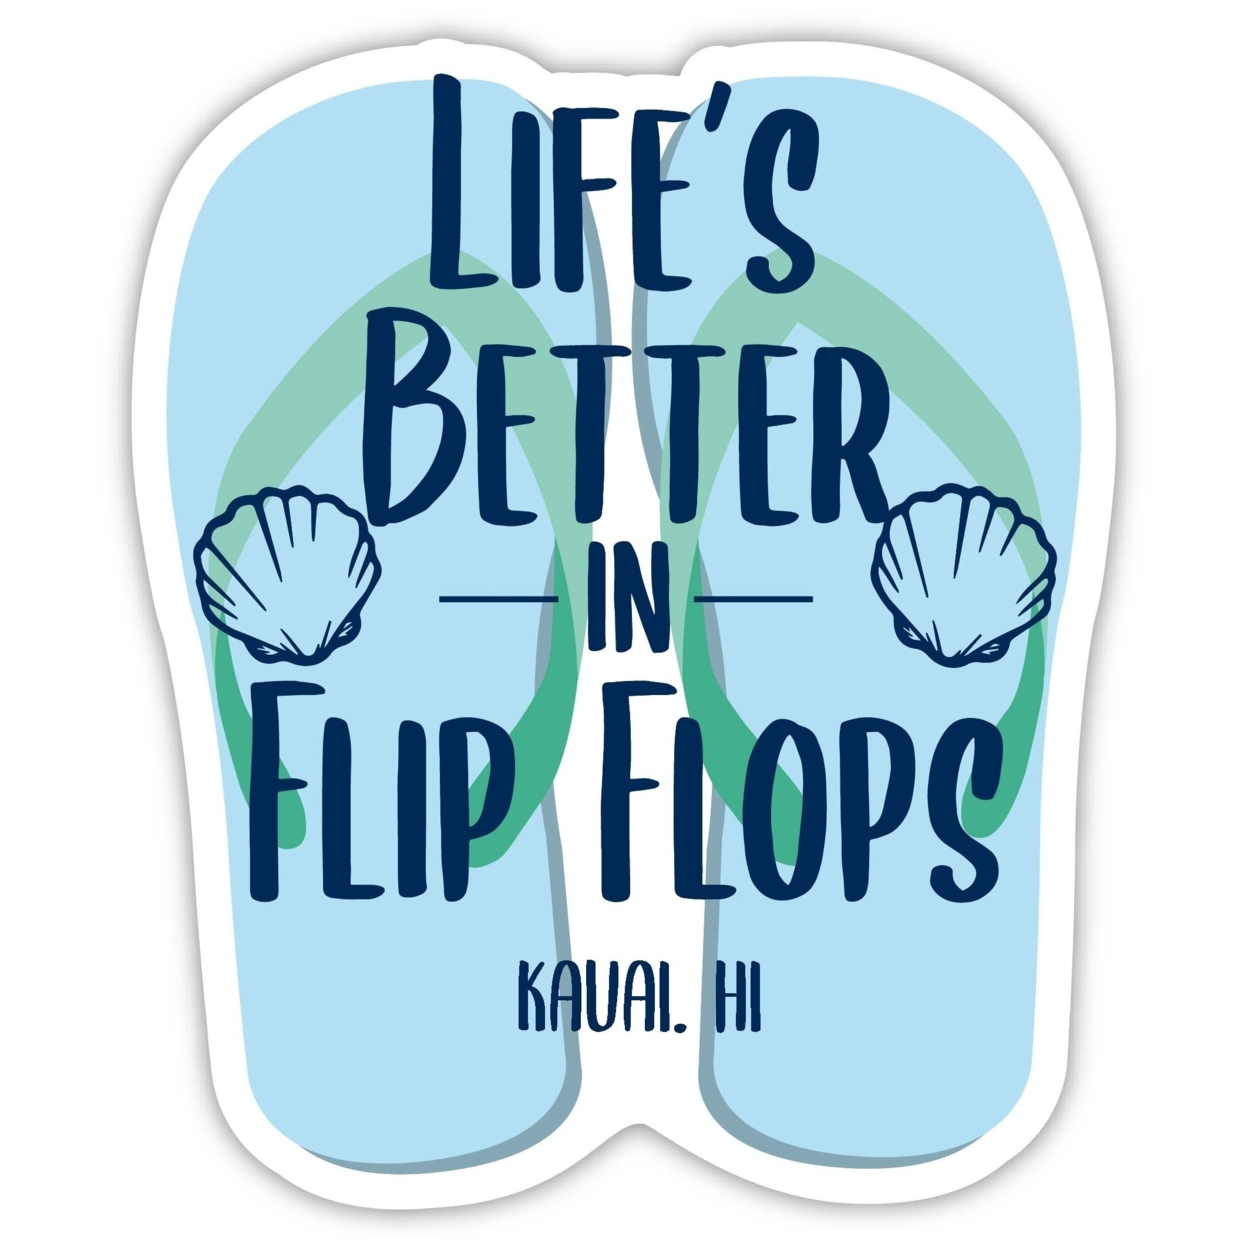 Kauai Hawaii Souvenir 4 Inch Vinyl Decal Sticker Flip Flop Design